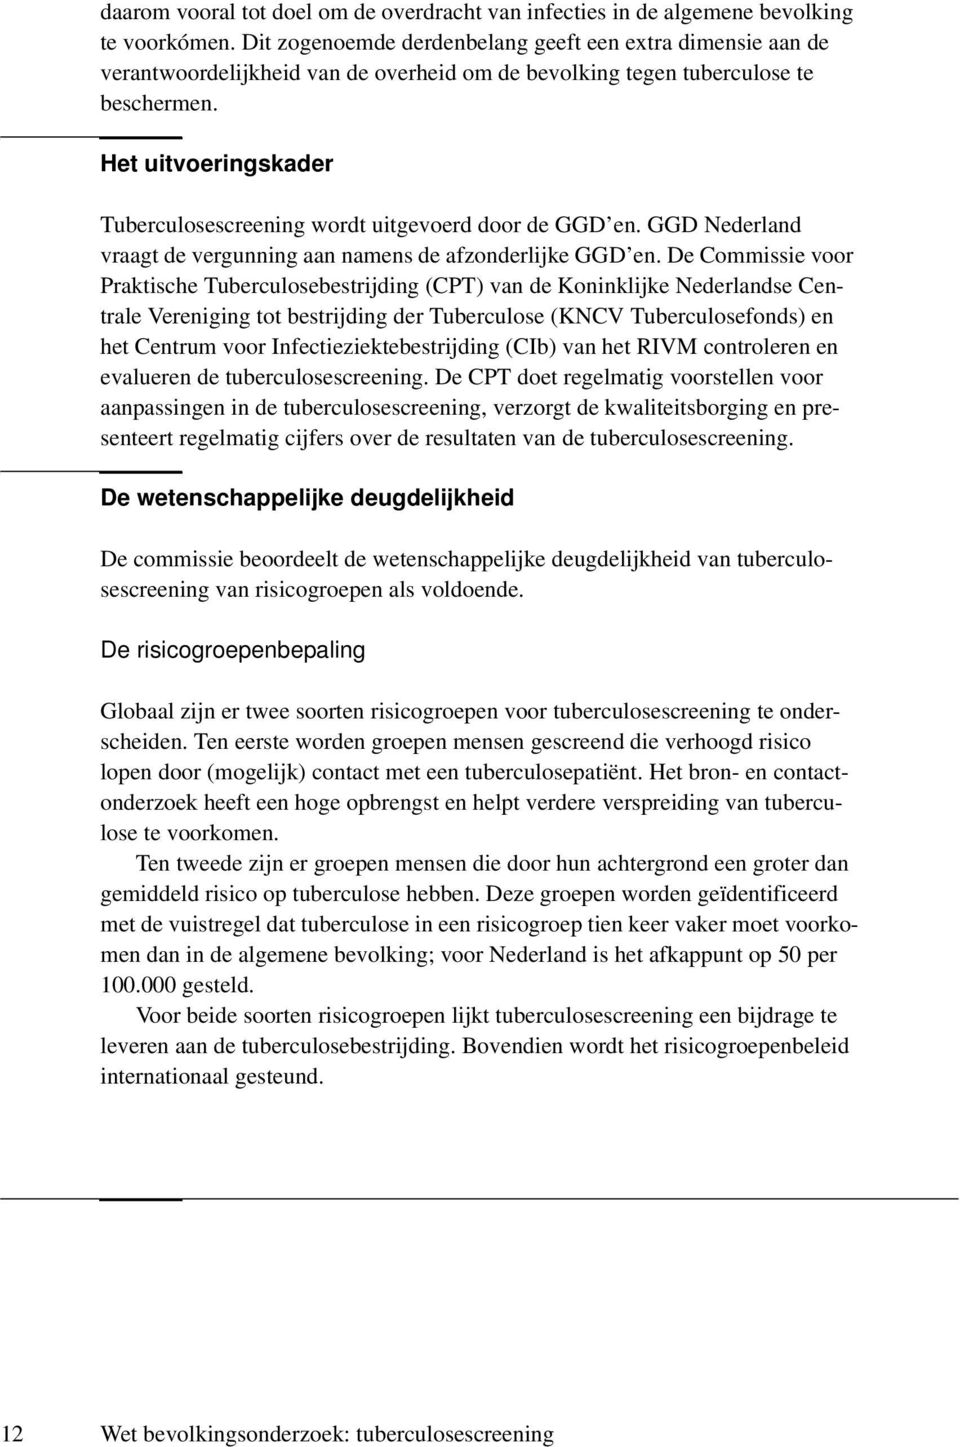 Het uitvoeringskader Tuberculosescreening wordt uitgevoerd door de GGD en. GGD Nederland vraagt de vergunning aan namens de afzonderlijke GGD en.